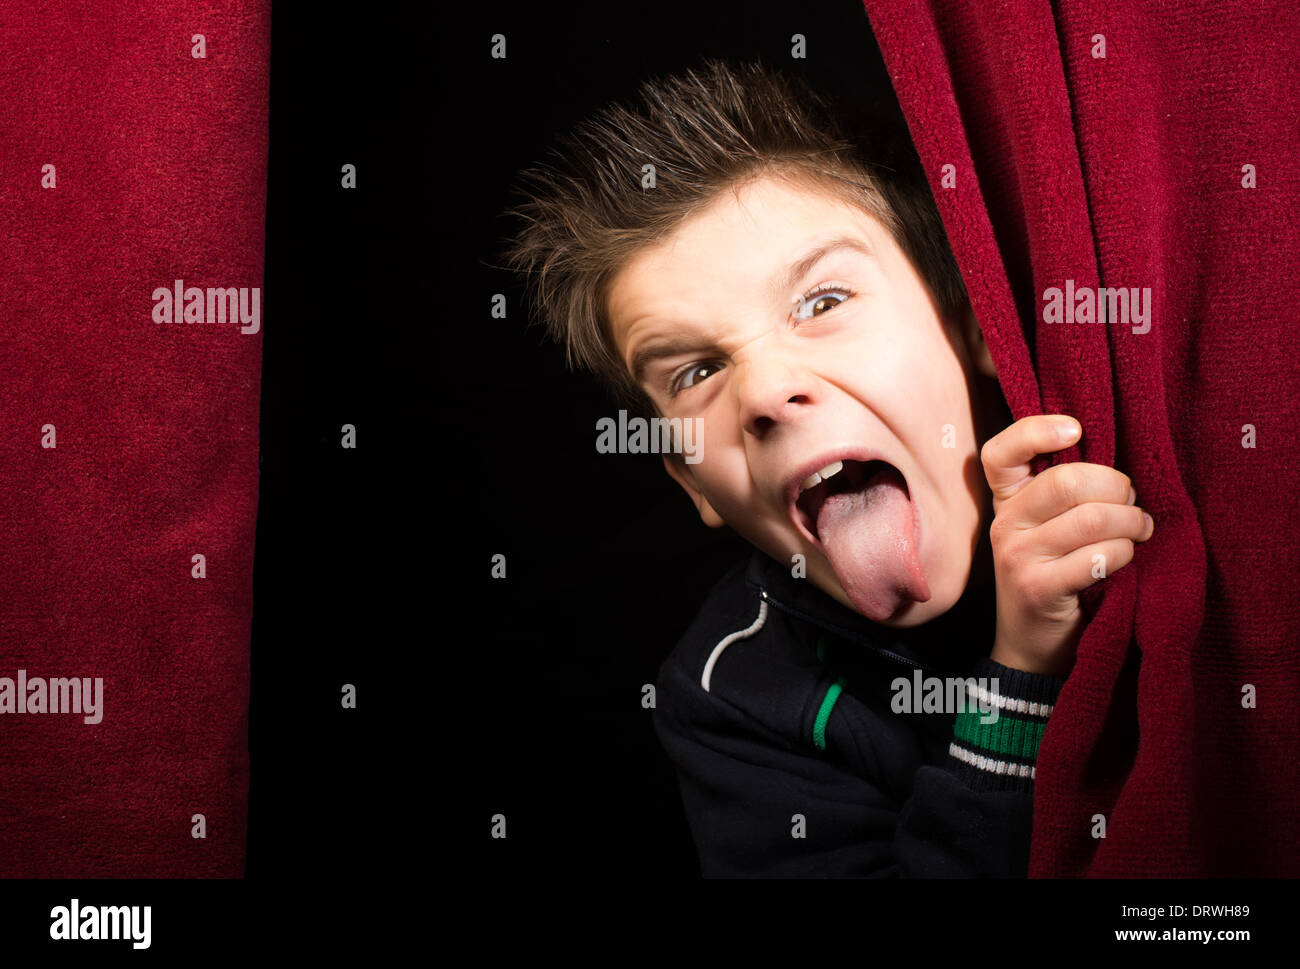 Enfant bâton dehors sa langue.apparaissant sous le rideau Banque D'Images